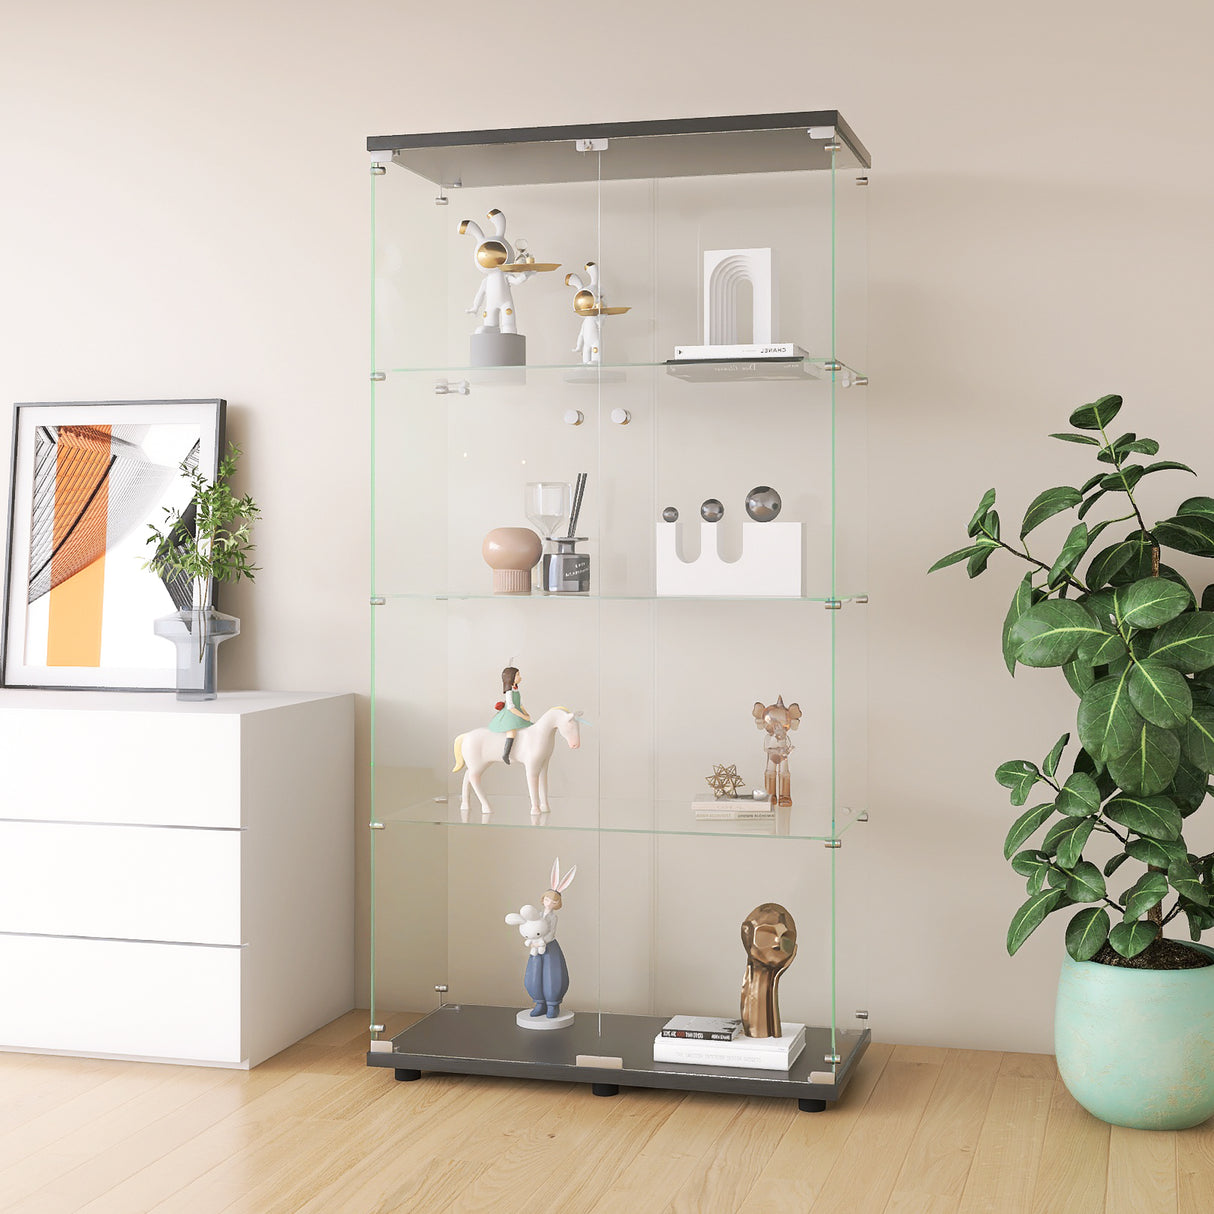 Two-door Glass Display Cabinet 4 Shelves with Door, Floor Standing Curio Bookshelf for Living Room Bedroom Office,  64.7"*31.7"*14.3",Black Home Elegance USA